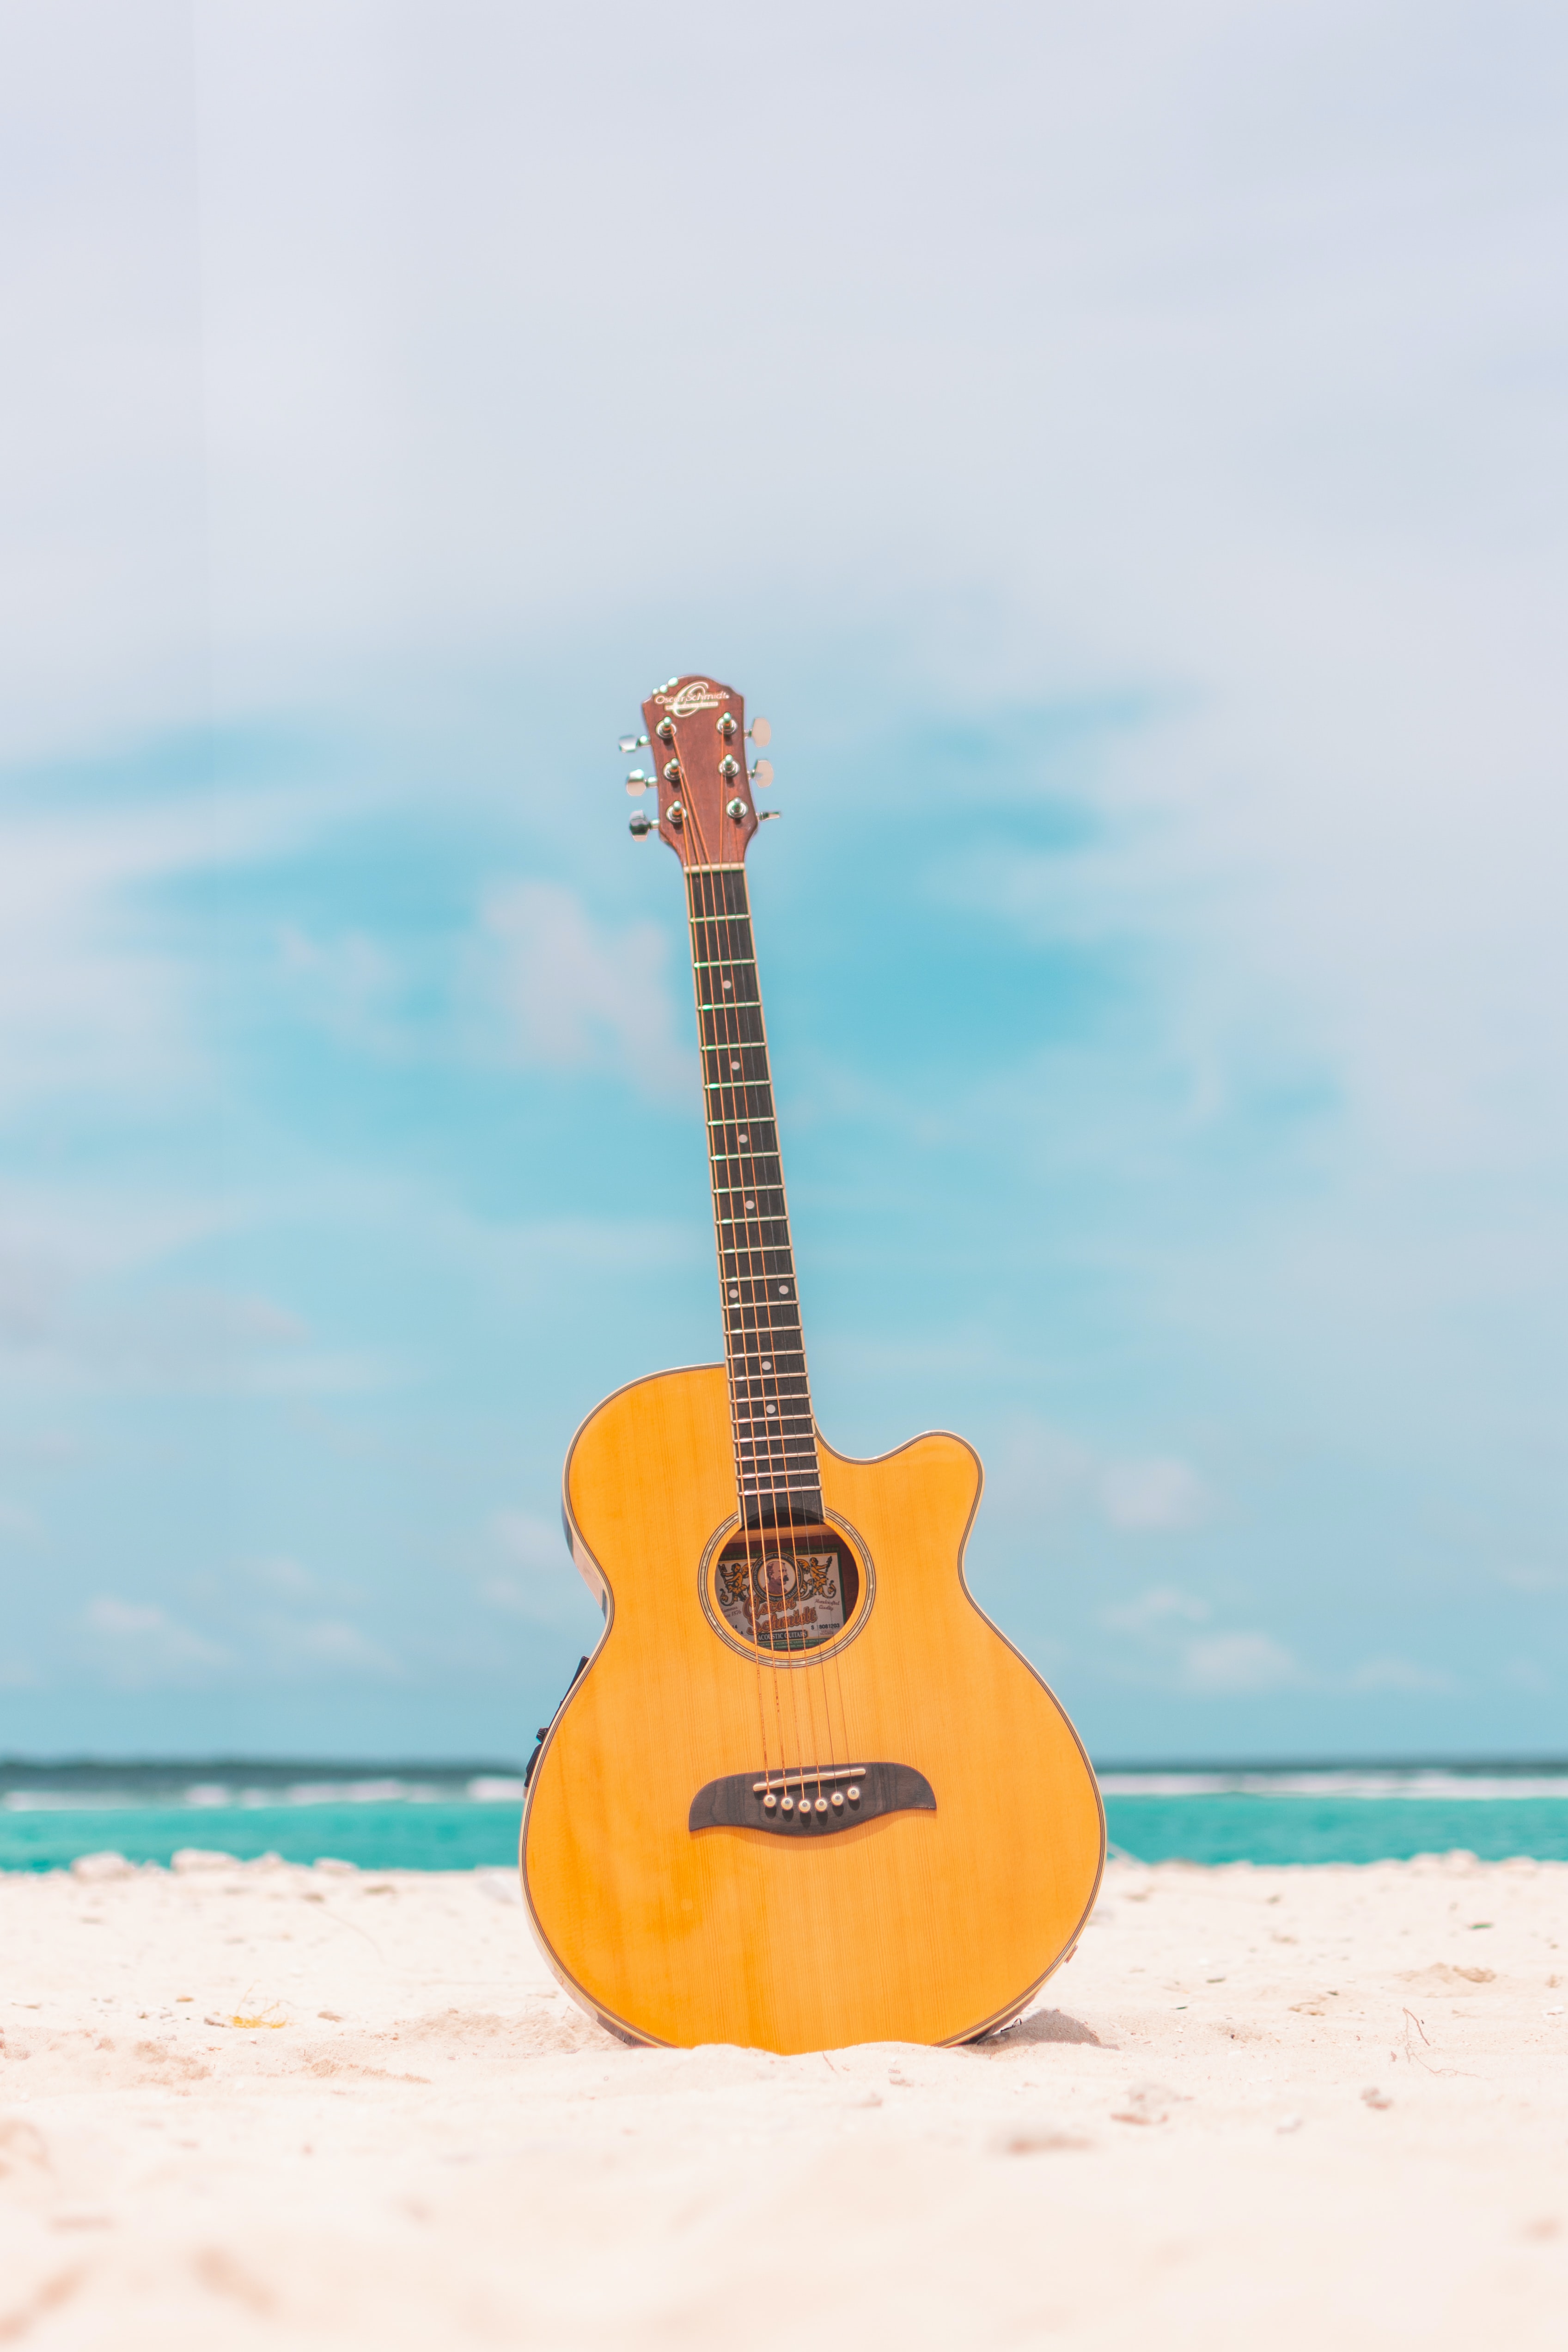 手機的53853屏保和壁紙吉他。 免費下載 音乐, 海滩, 工具, 夏天 圖片